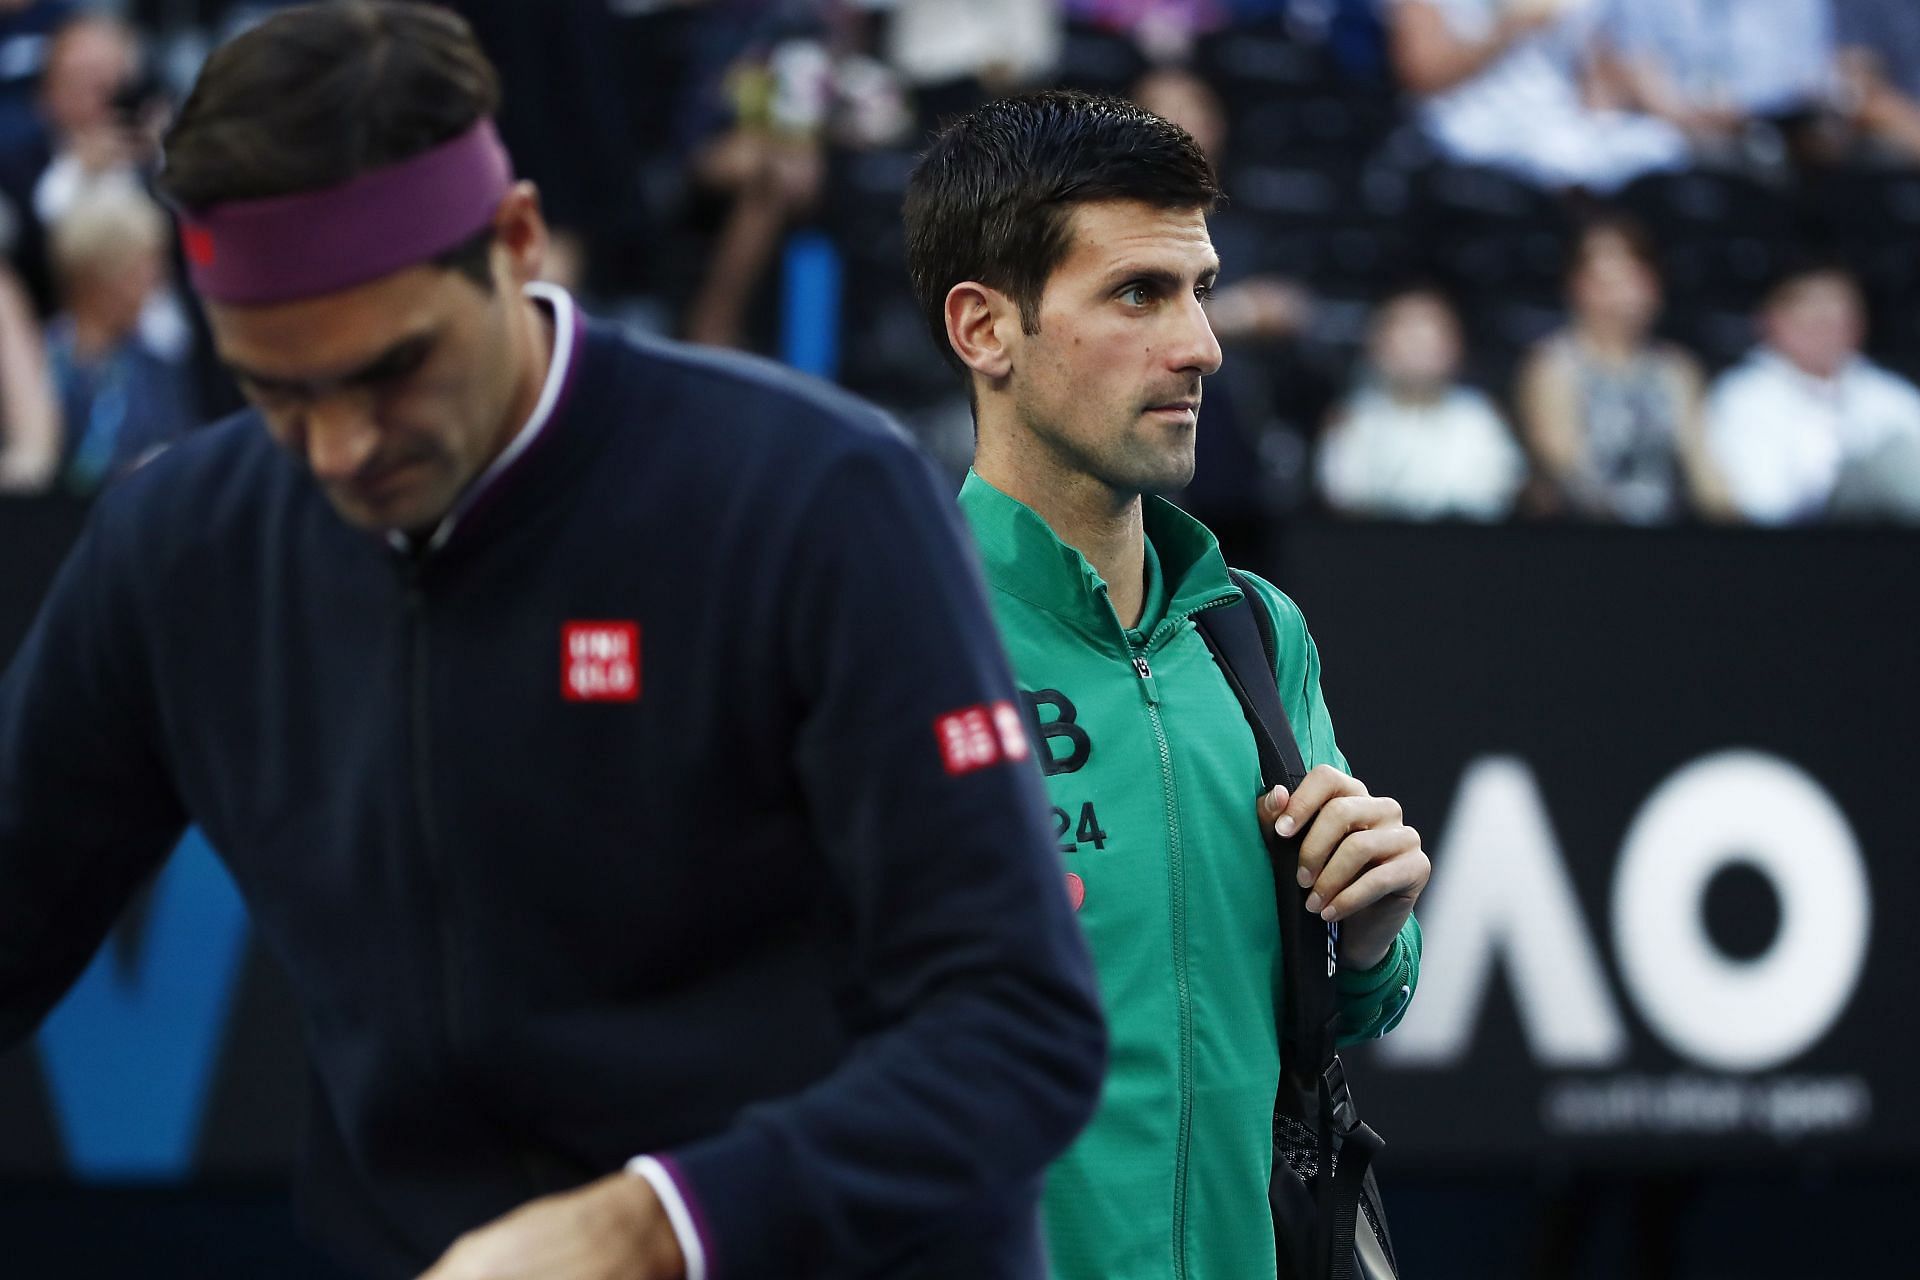 Roger Federer and Novak Djokovic at the Australian open 2020